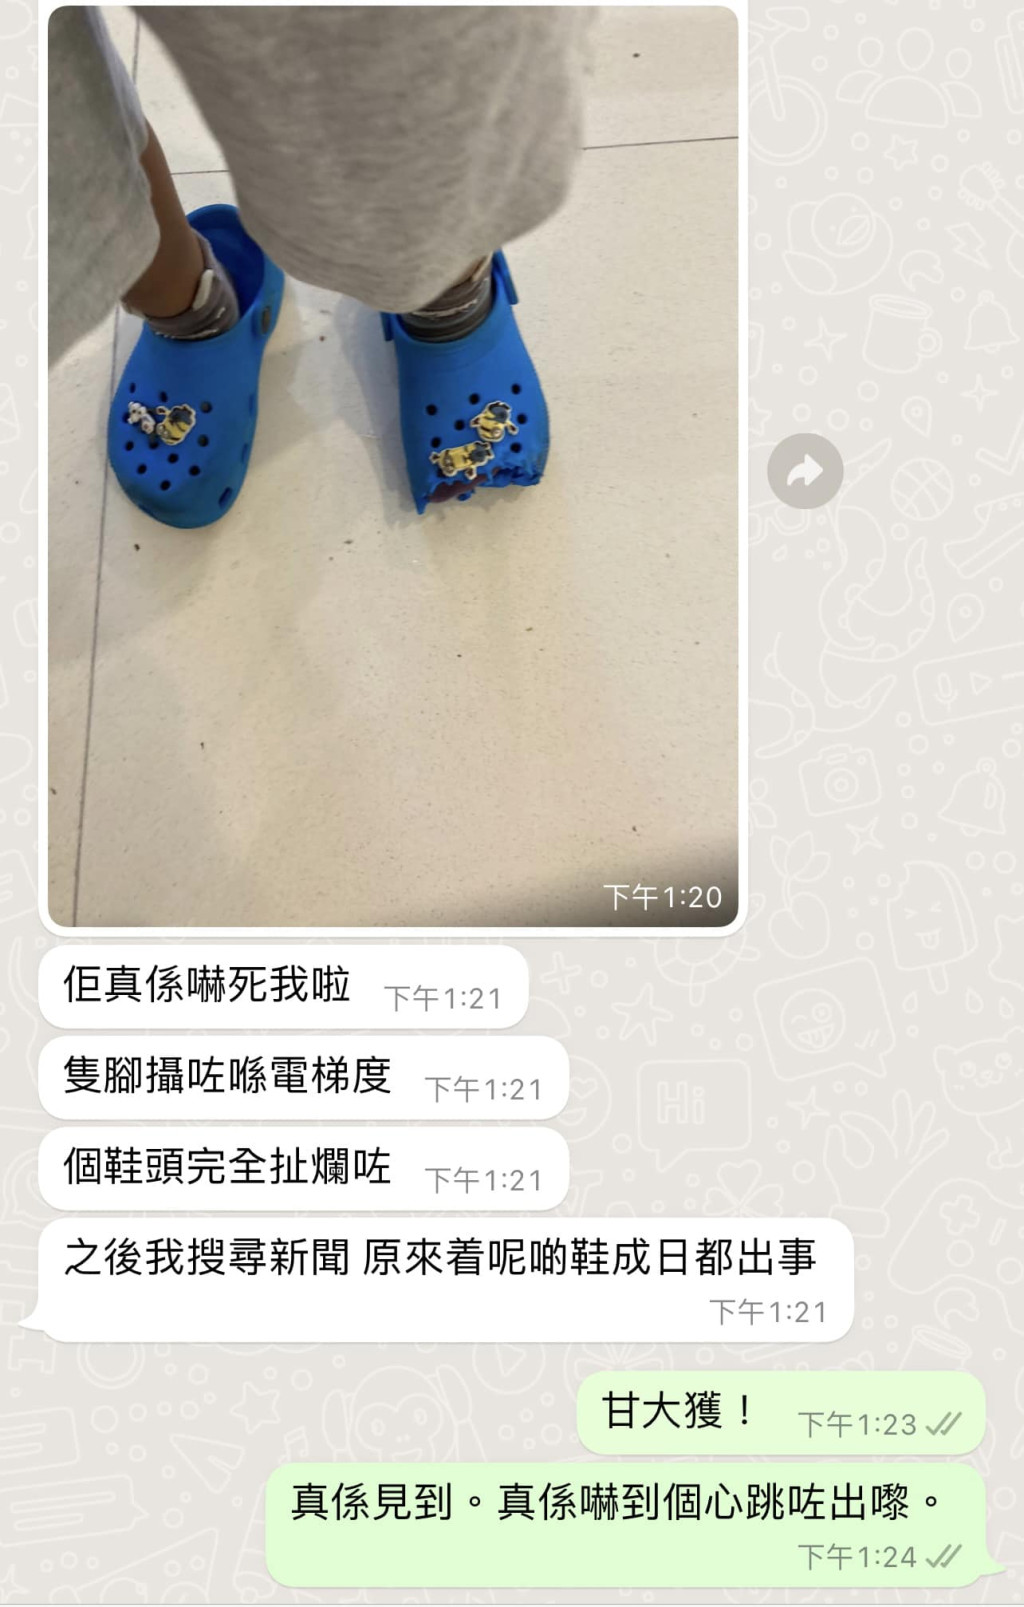 網民侄子所穿的塑膠鞋鞋頭被電梯扯爛。群組「馬鞍山之友2.0」網民圖片